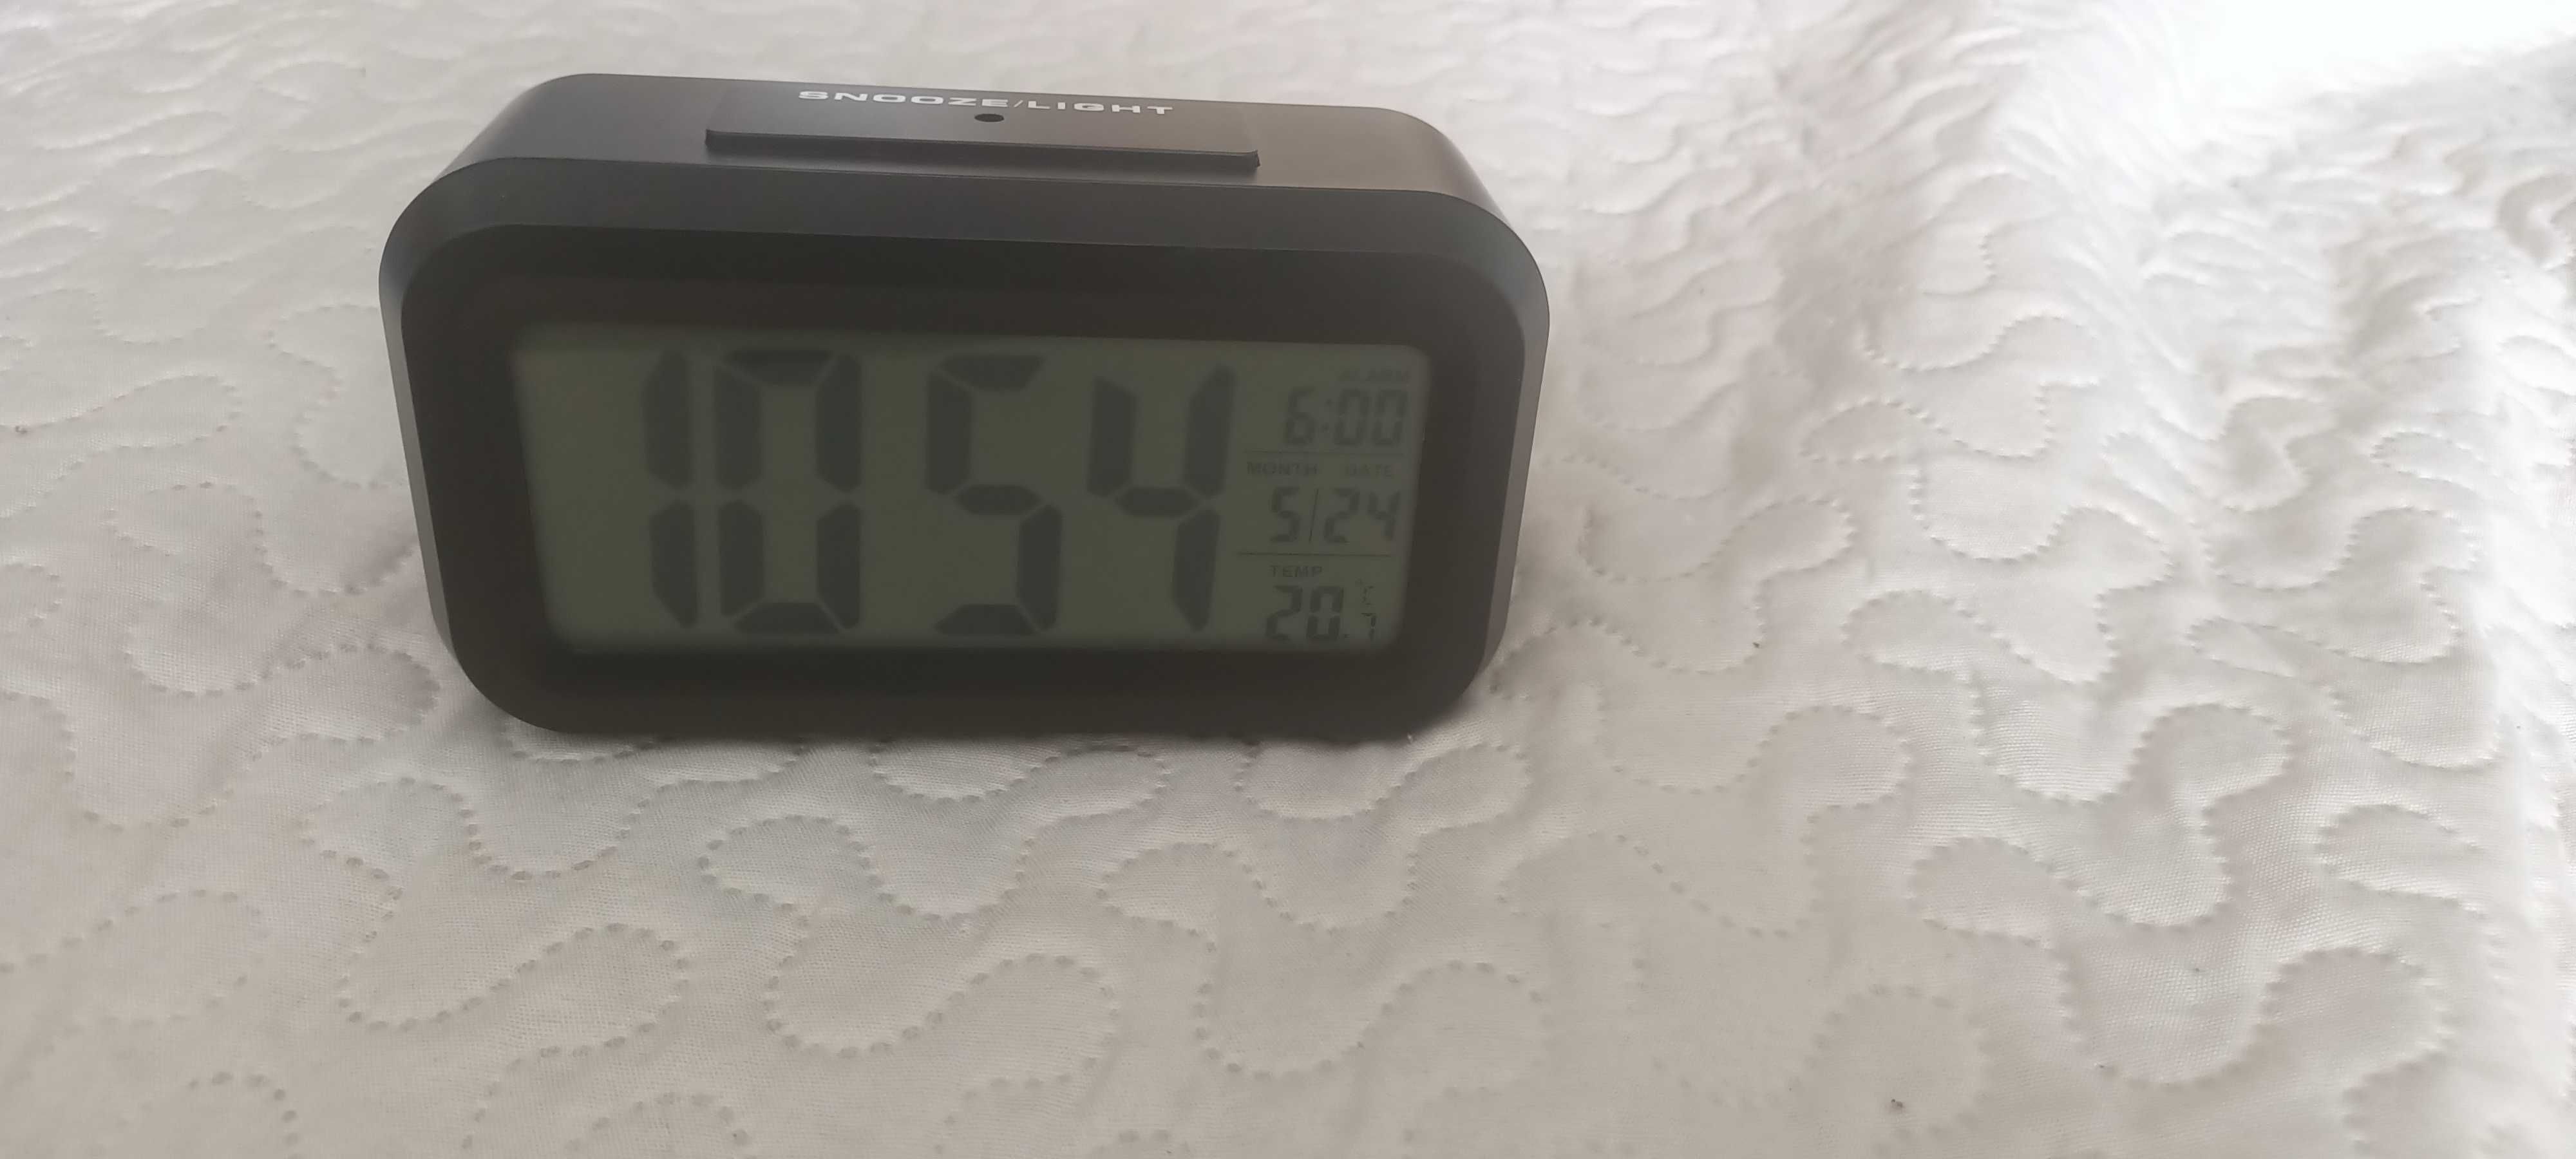 Zegar budzik elektroniczny LED cyfrowy, termometr